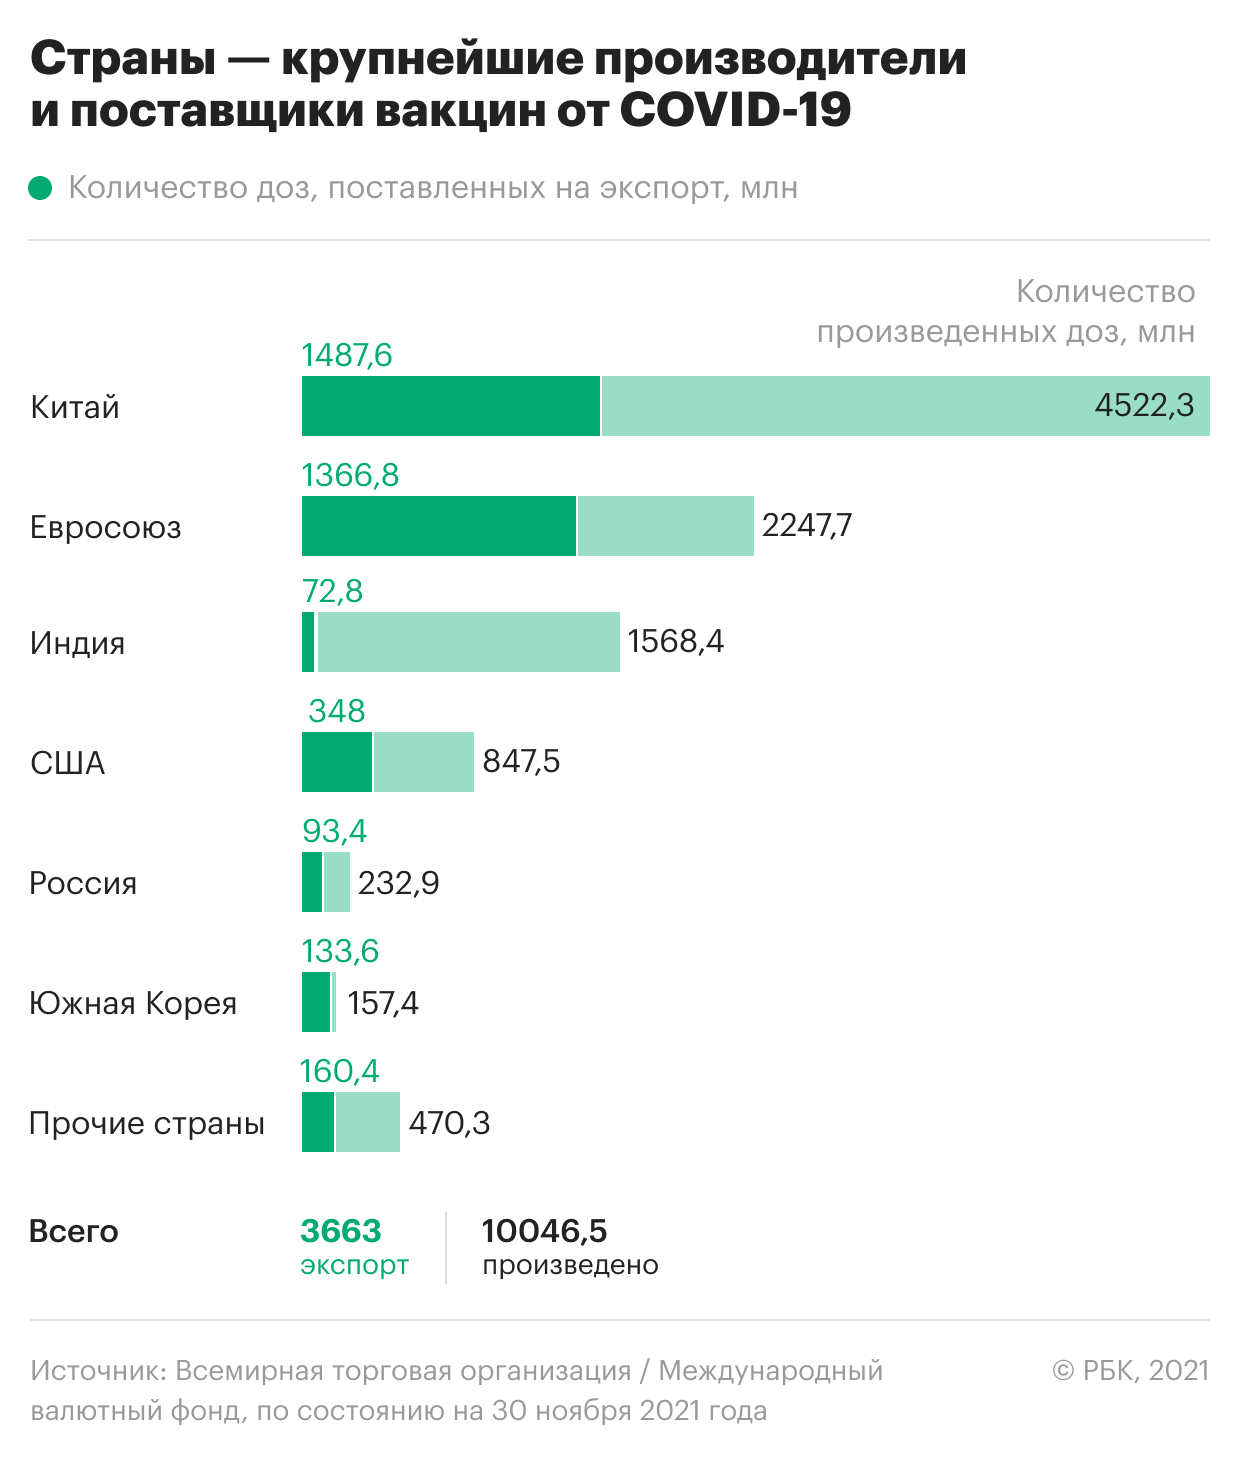 Какие страны сделали и поставили за границу вакцин больше, чем Россия